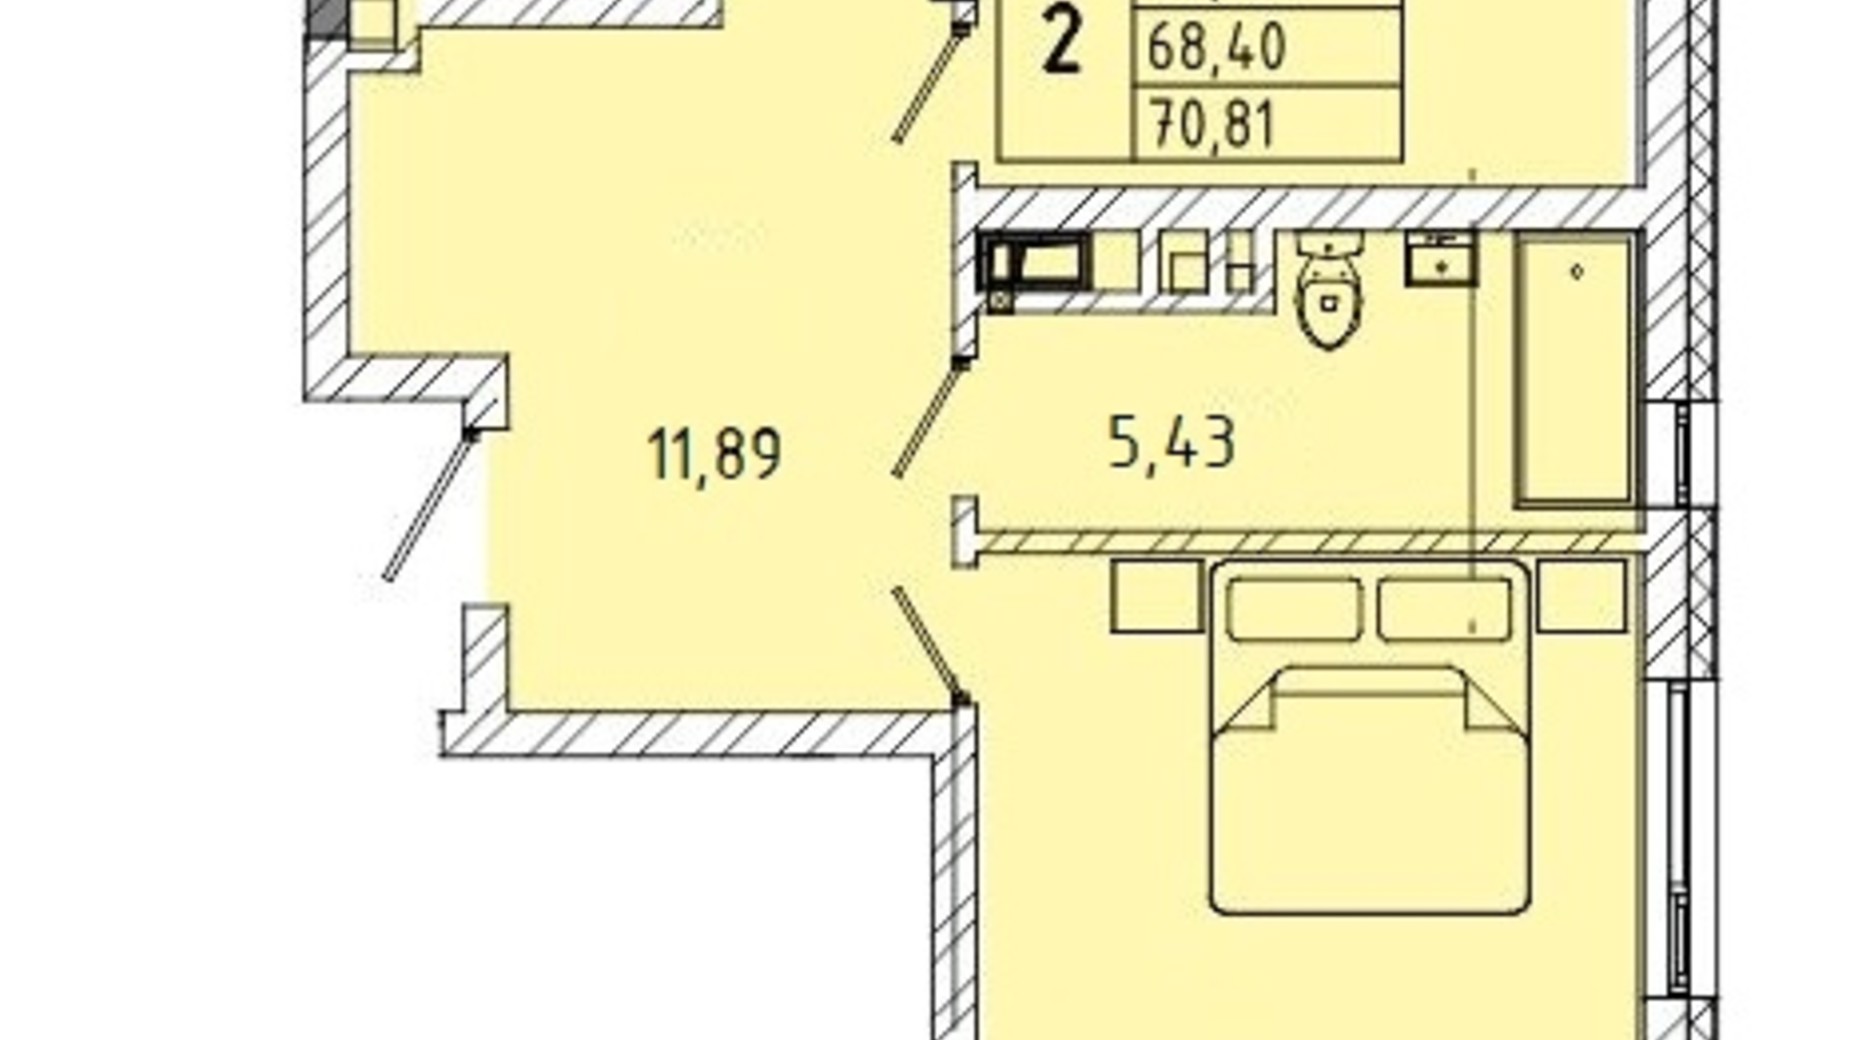 Планування 2-кімнатної квартири в ЖК вул. Миколайчука, 38  70.81 м², фото 598200